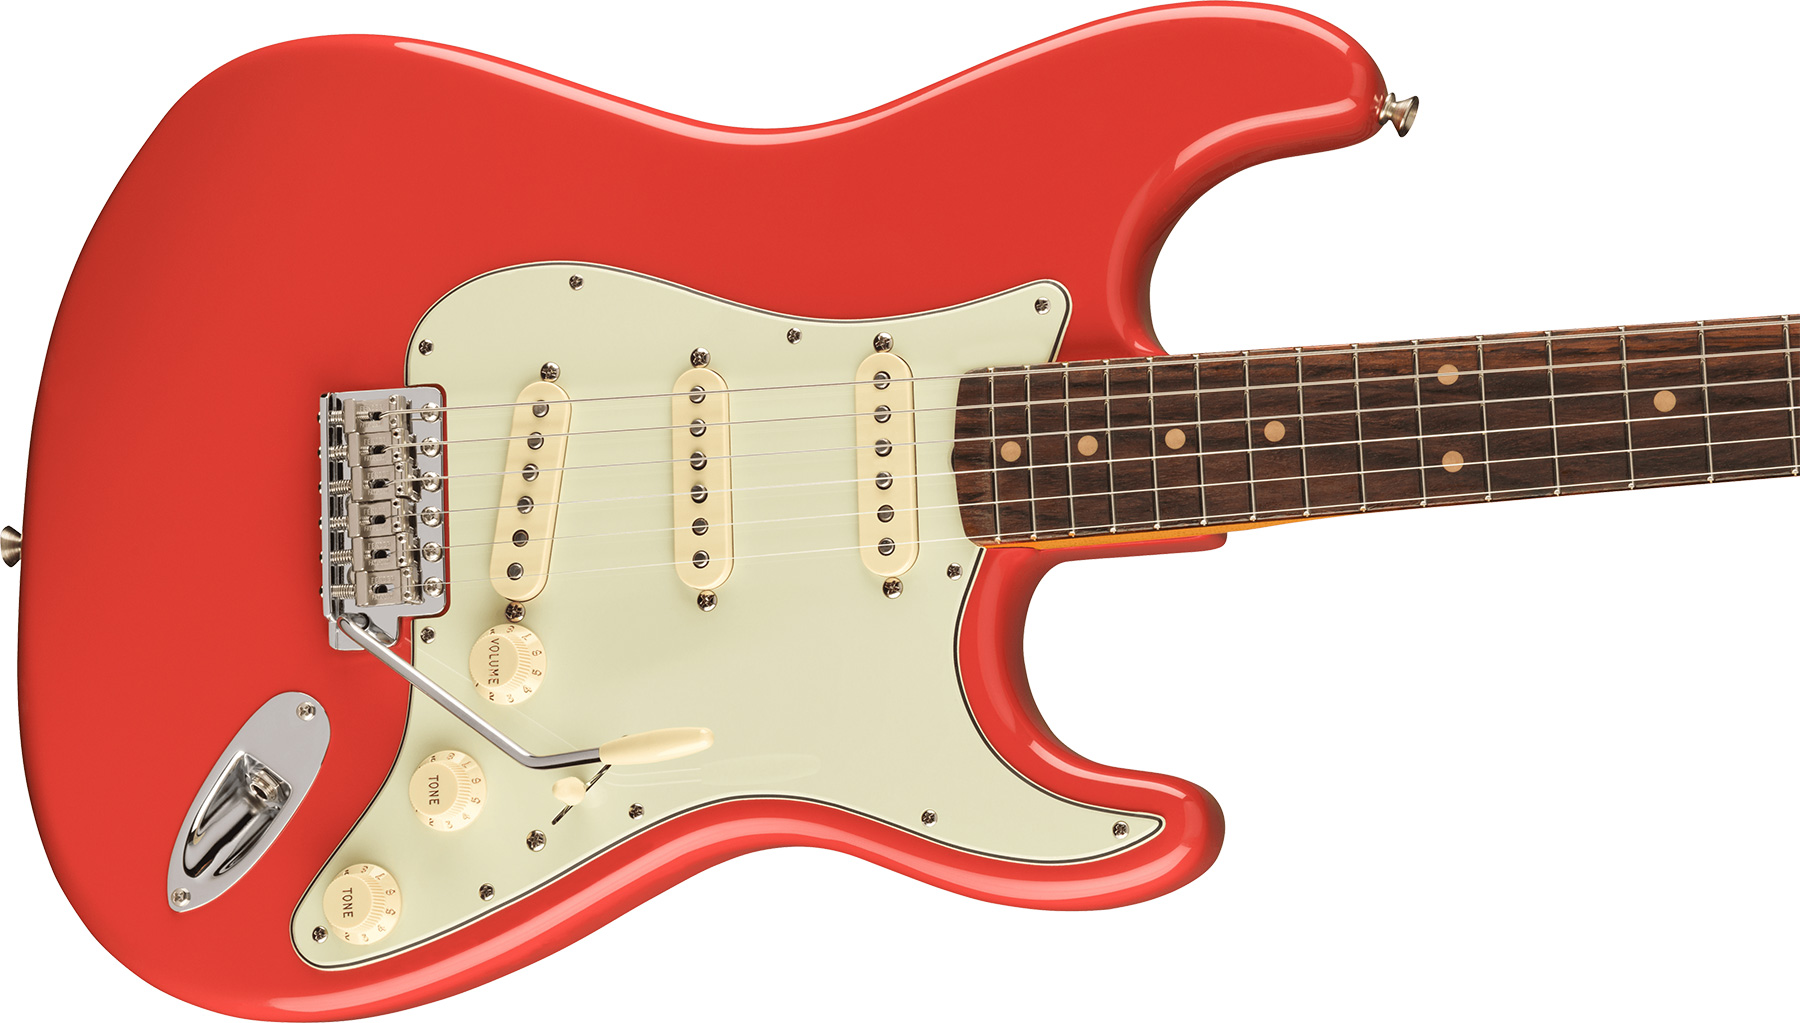 Fender Strat 1961 American Vintage Ii Usa 3s Trem Rw - Fiesta Red - Guitare Électrique Forme Str - Variation 2